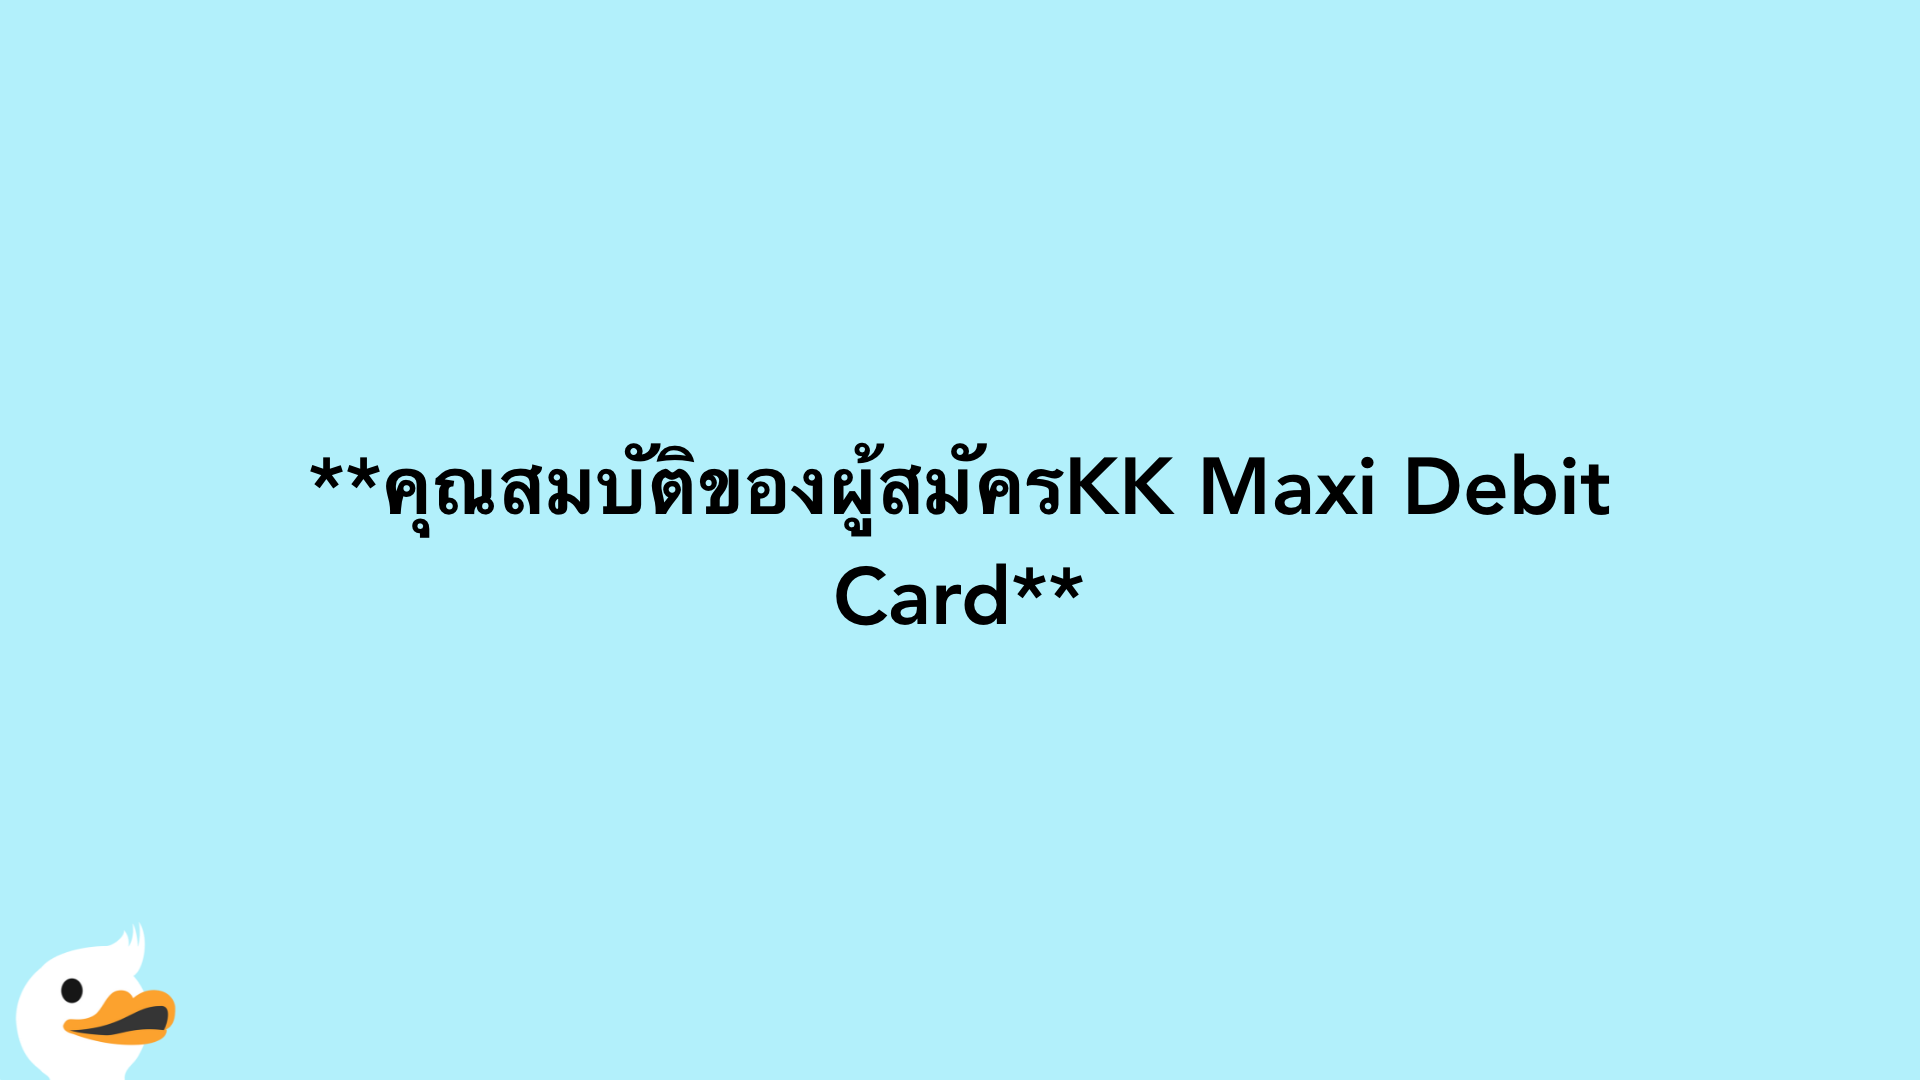 คุณสมบัติของผู้สมัครKK Maxi Debit Card